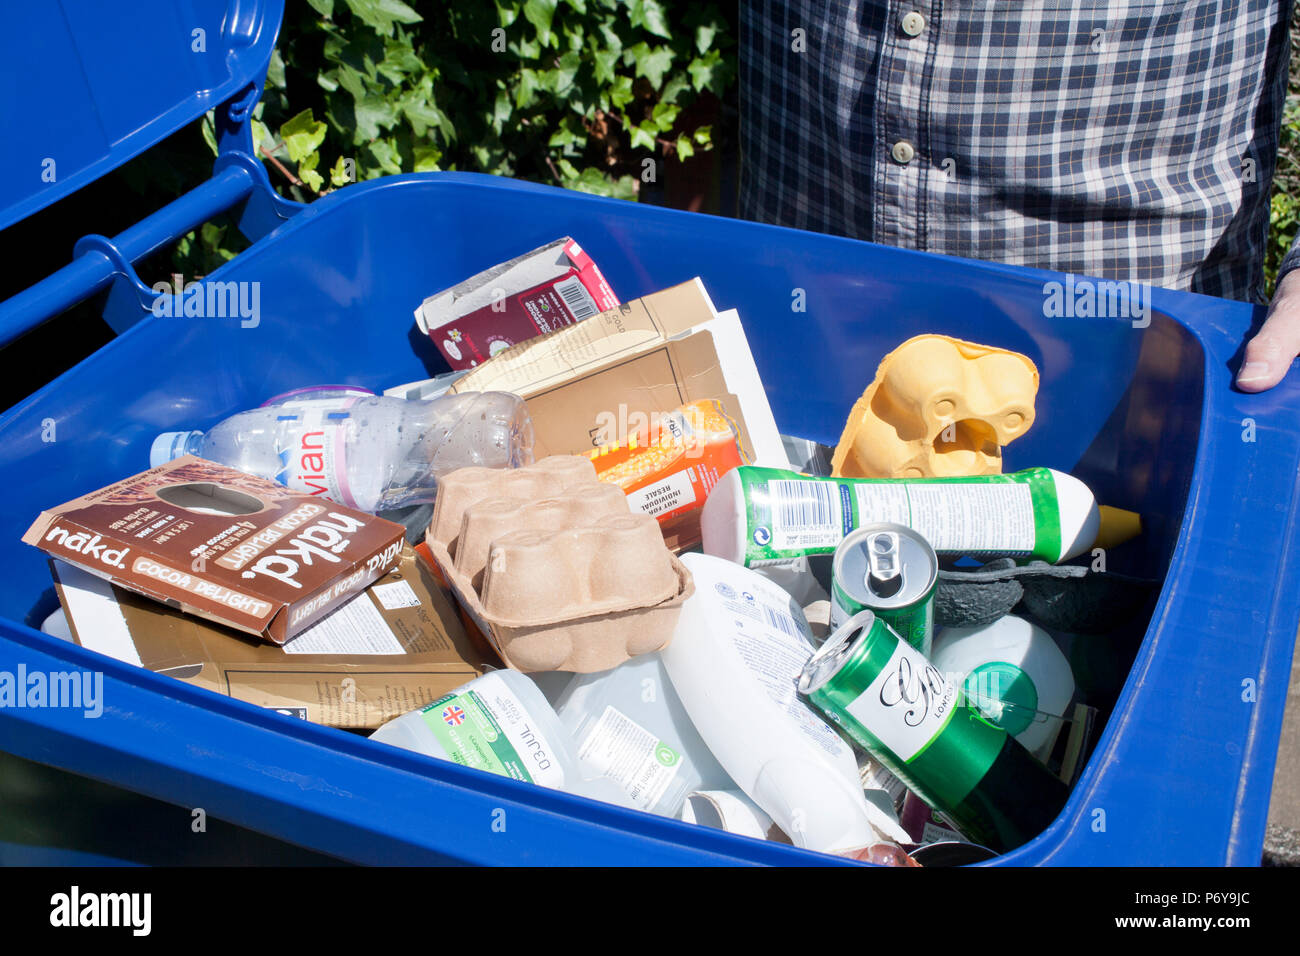 Blue bin mixed recycling Stock Photo